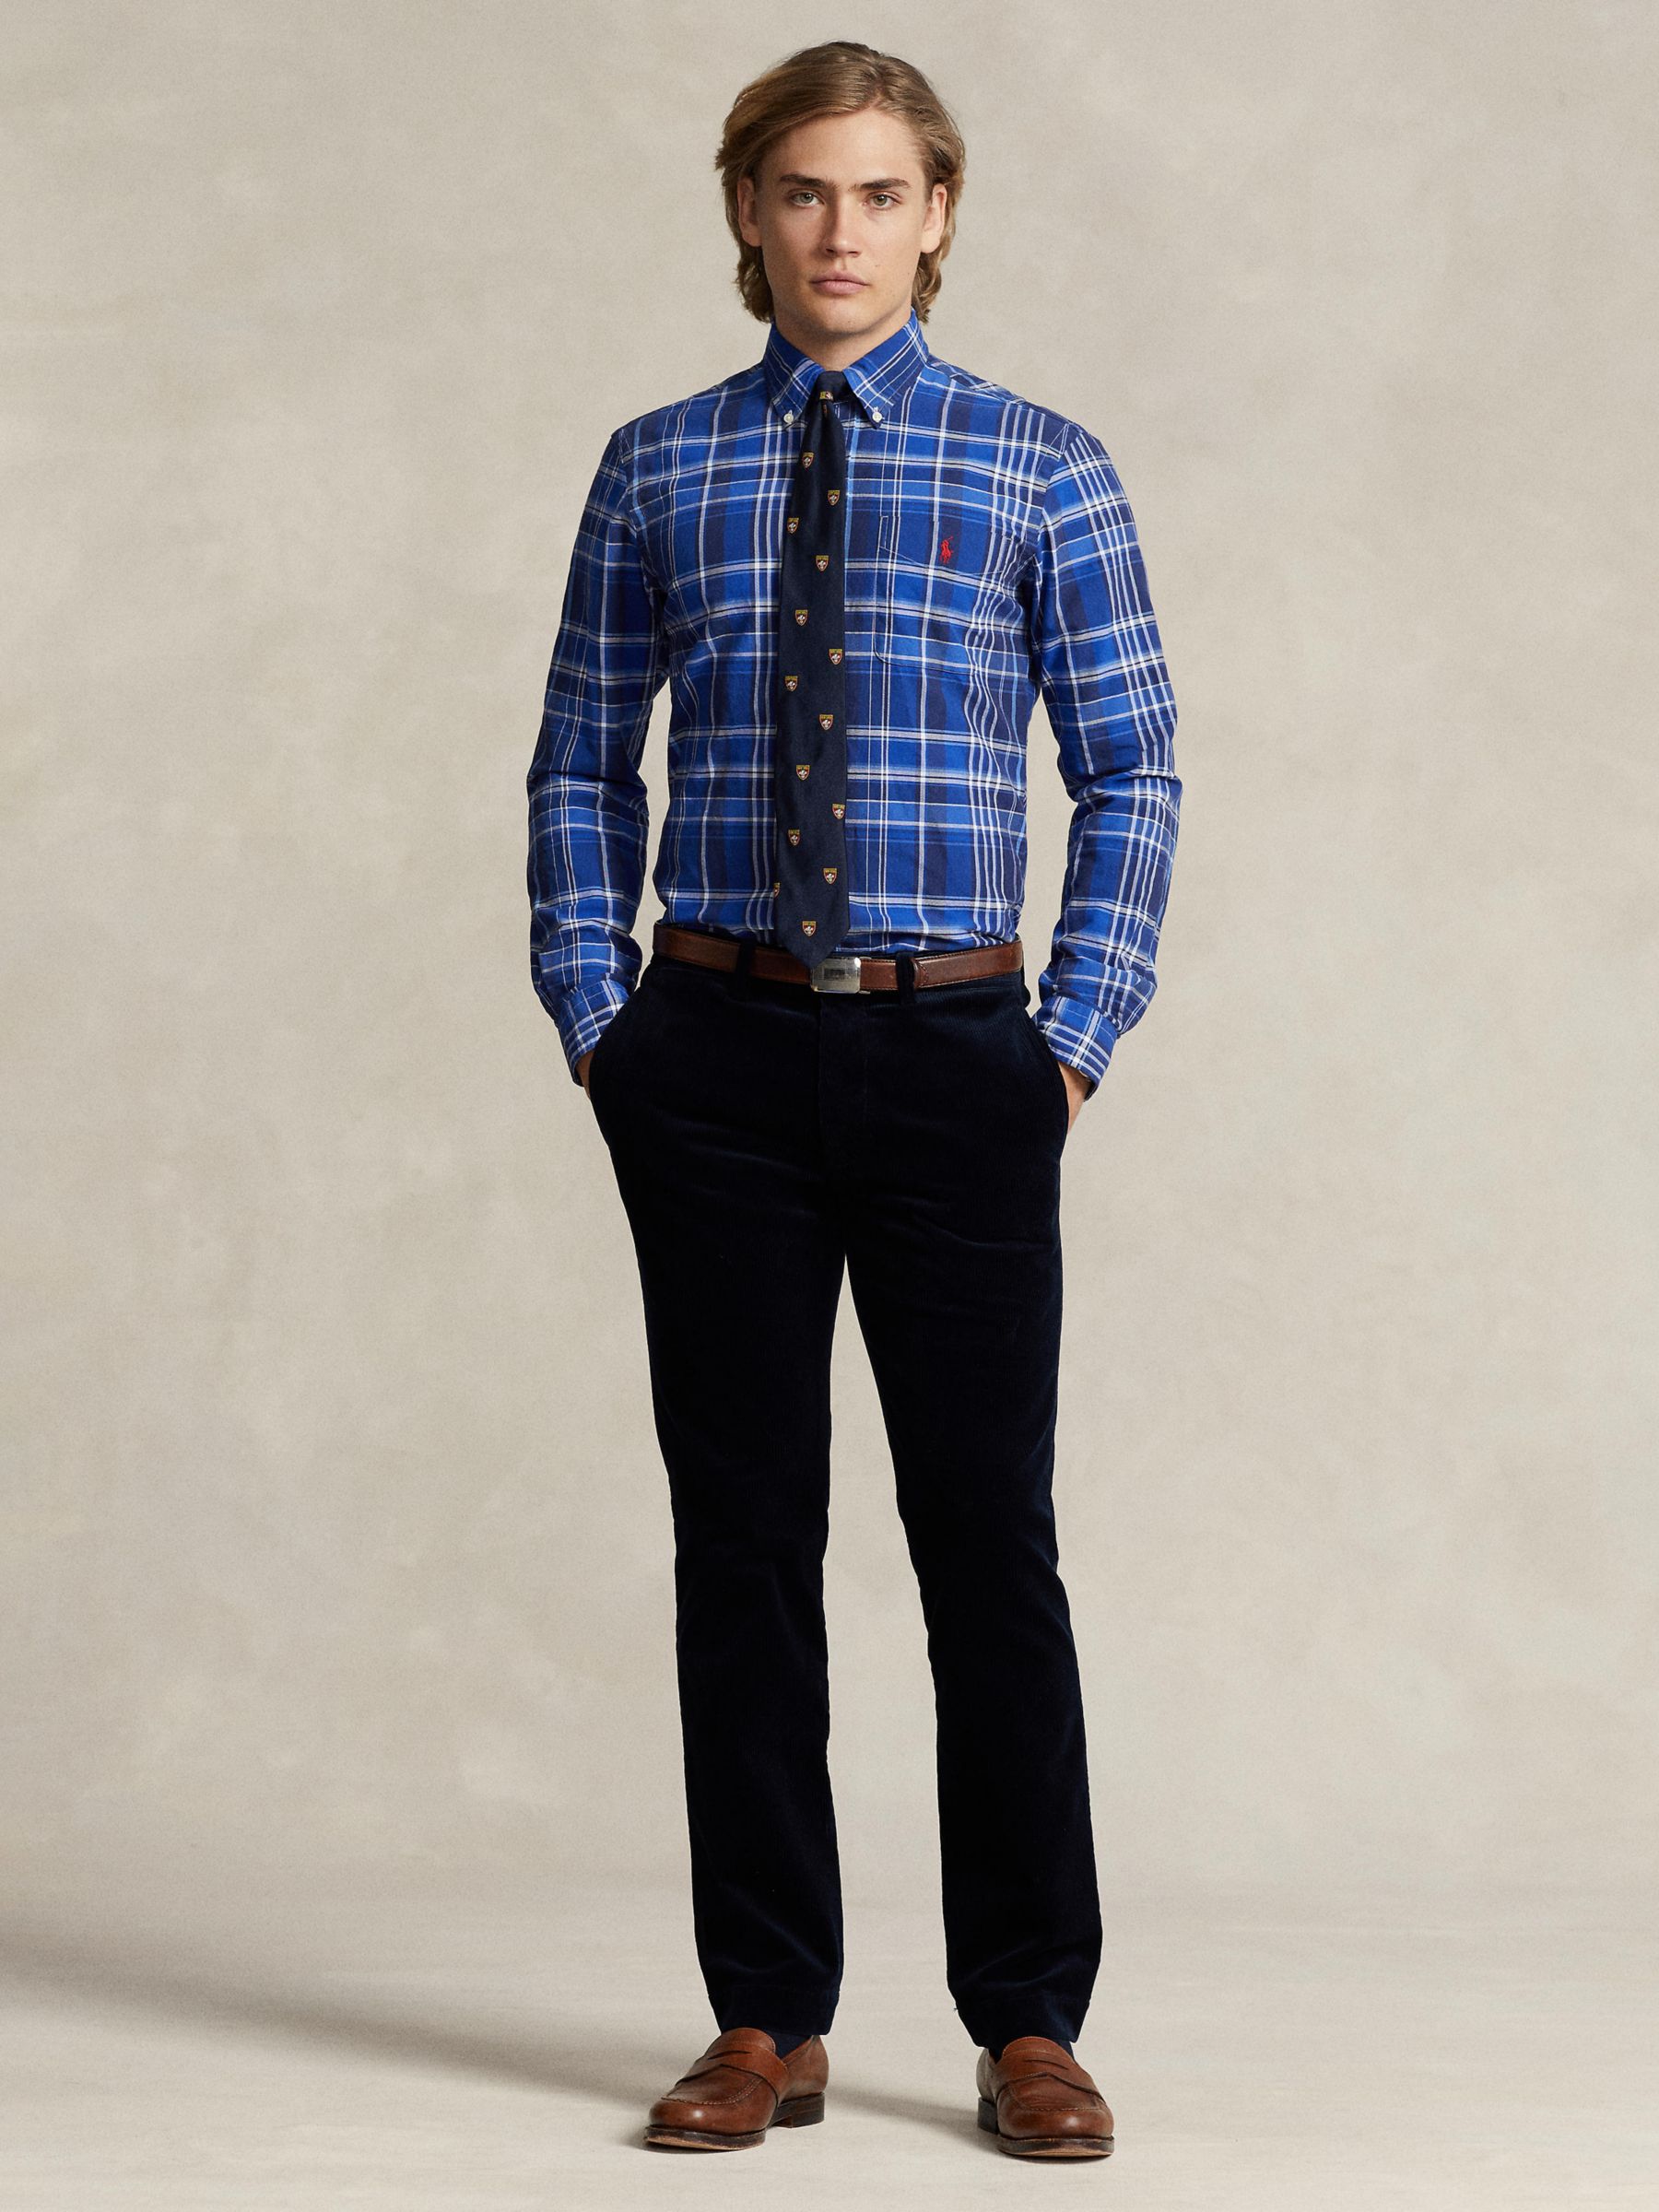 Ralph Lauren Polo Ralph Lauren Check Long Sleeve Cotton Shirt, Blue/Multi, S